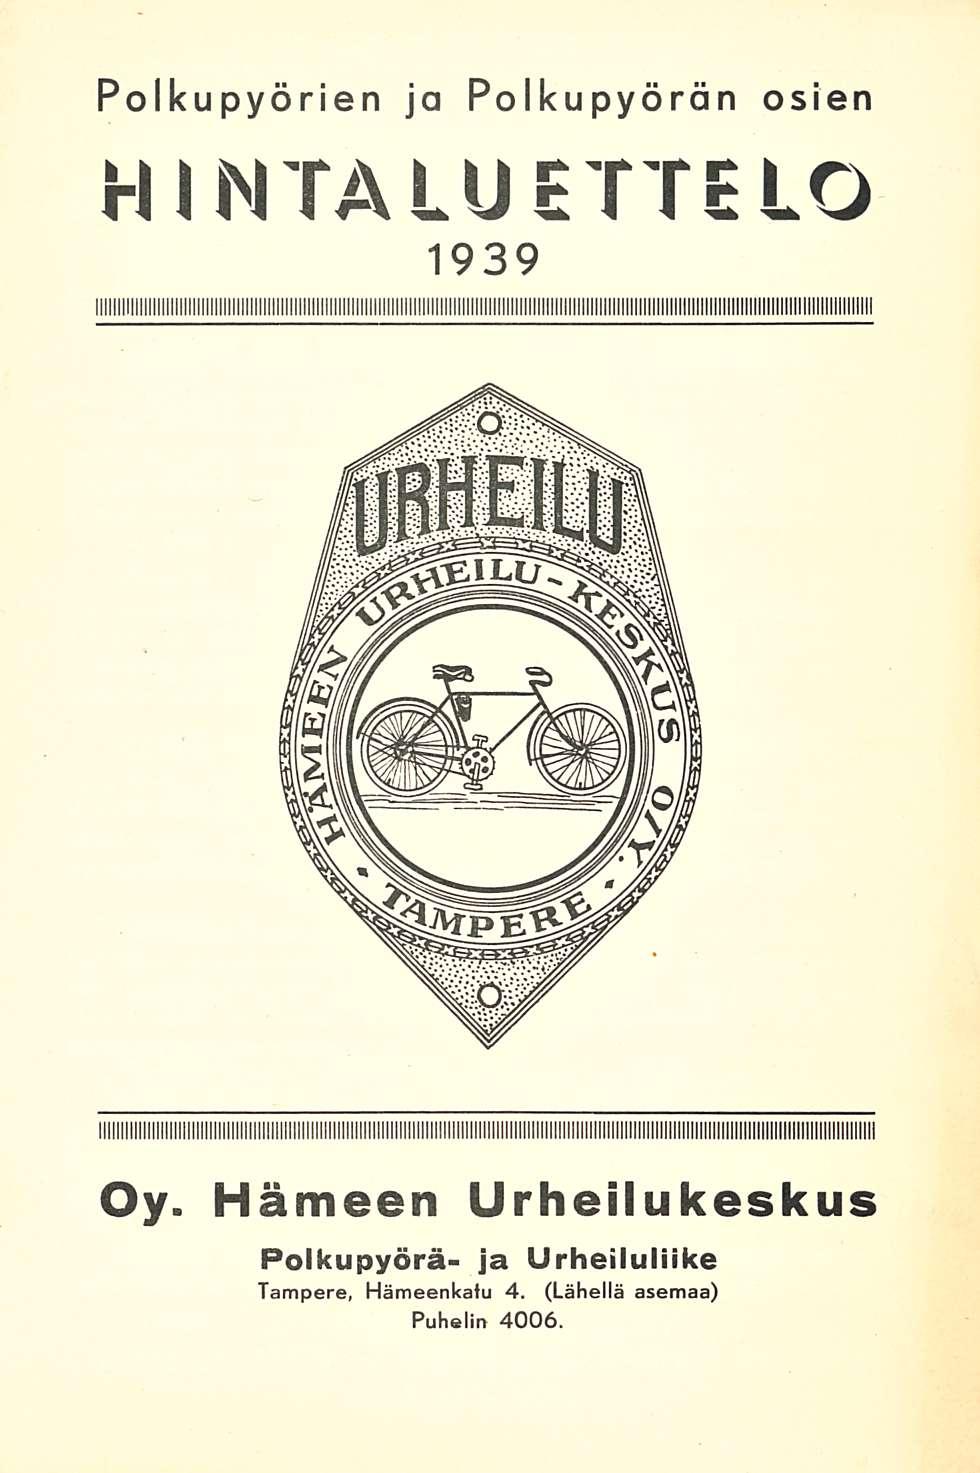 Polkupyörien ja polkupyörän osien hintaluettelo 1939 Oy.